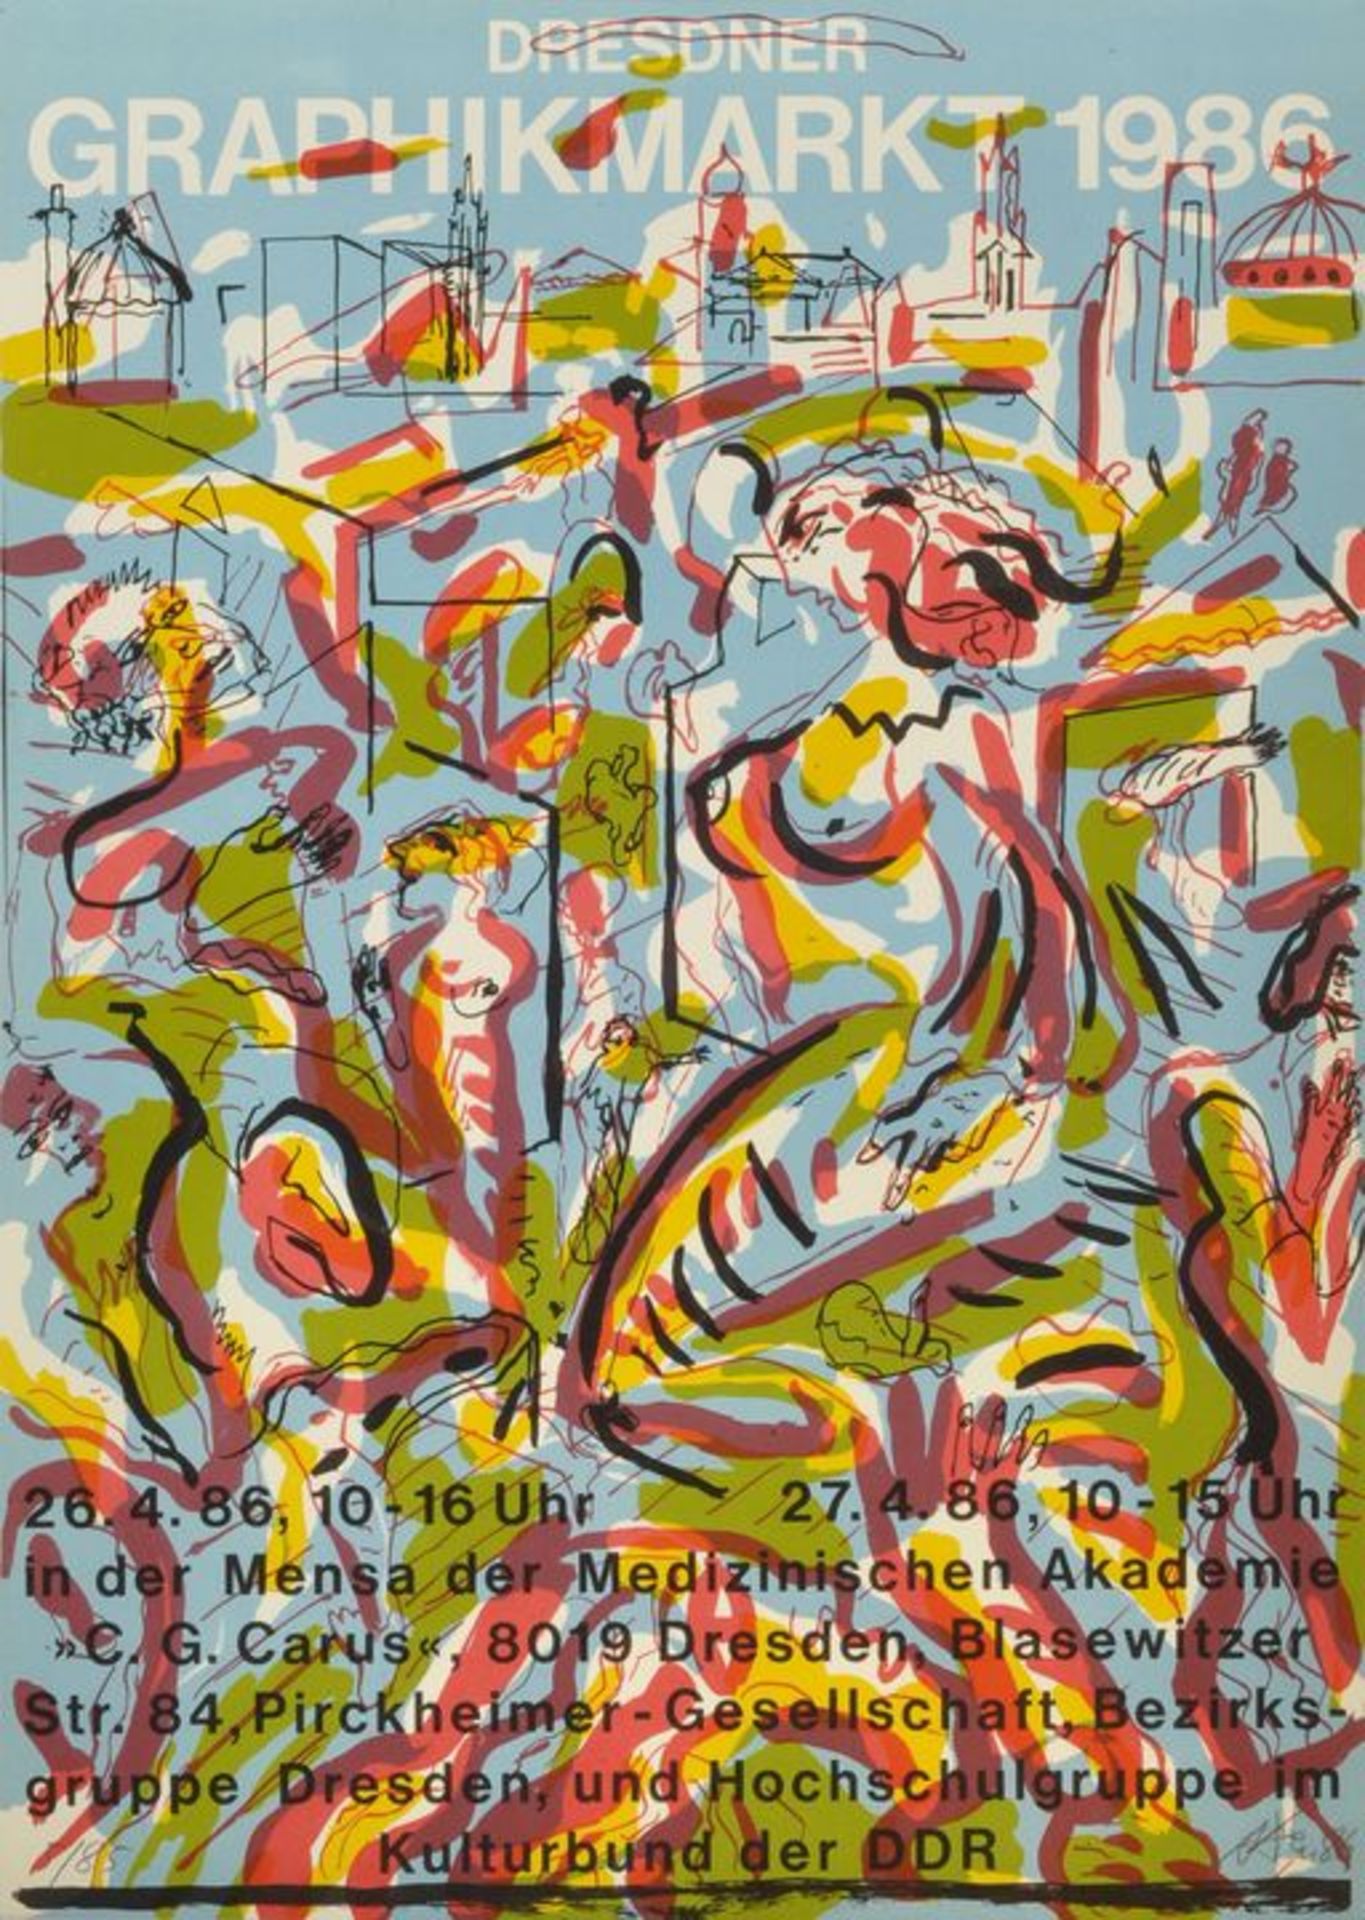 Andreas Dress ''Grafikmarkt'' 1986 / Andreas Dress lithograph